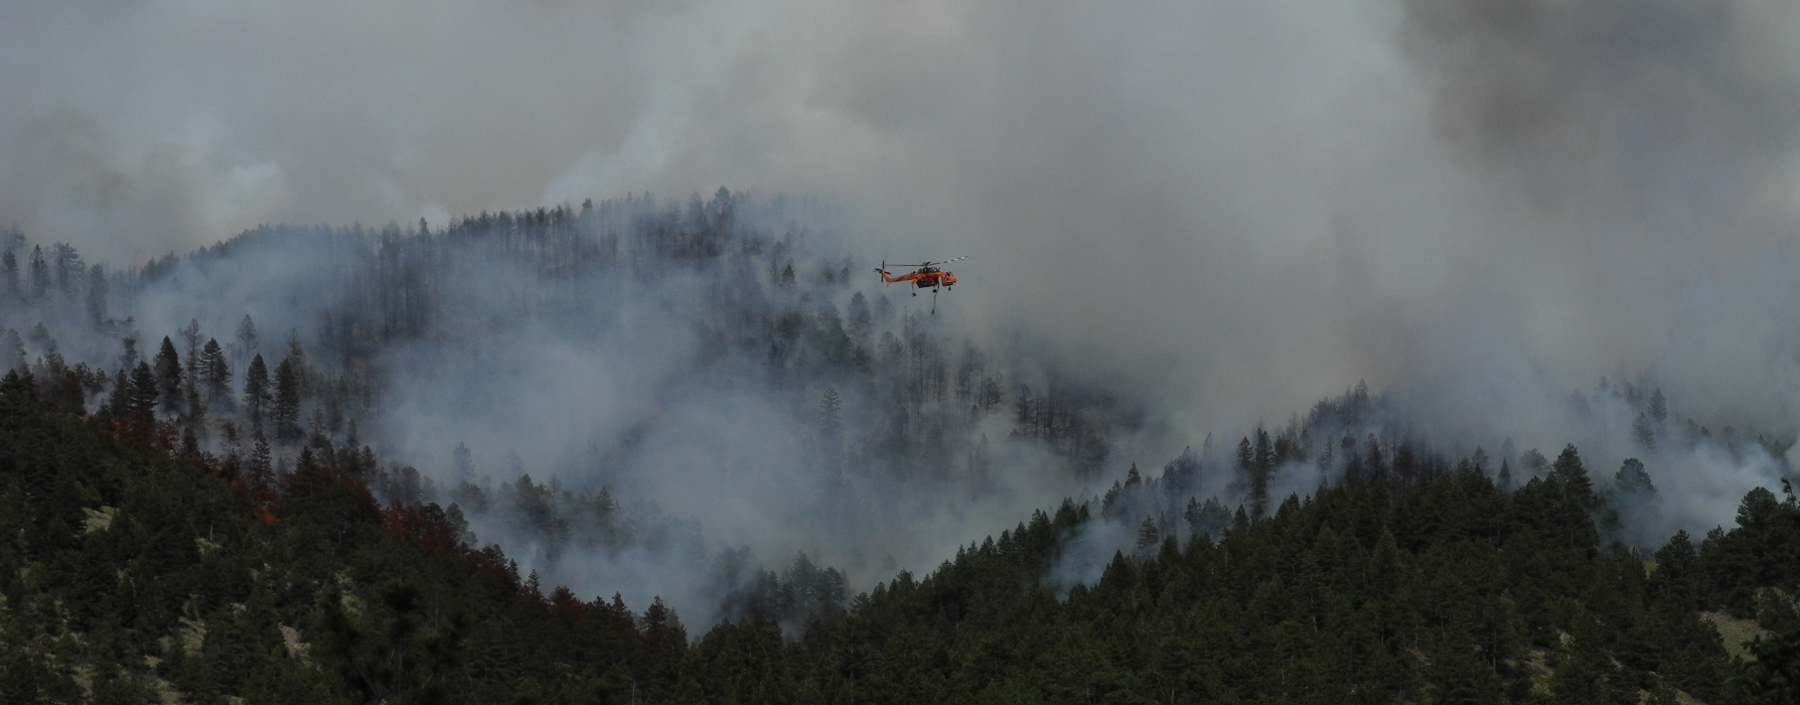 Flagstaff Fire, June 26th, 2012